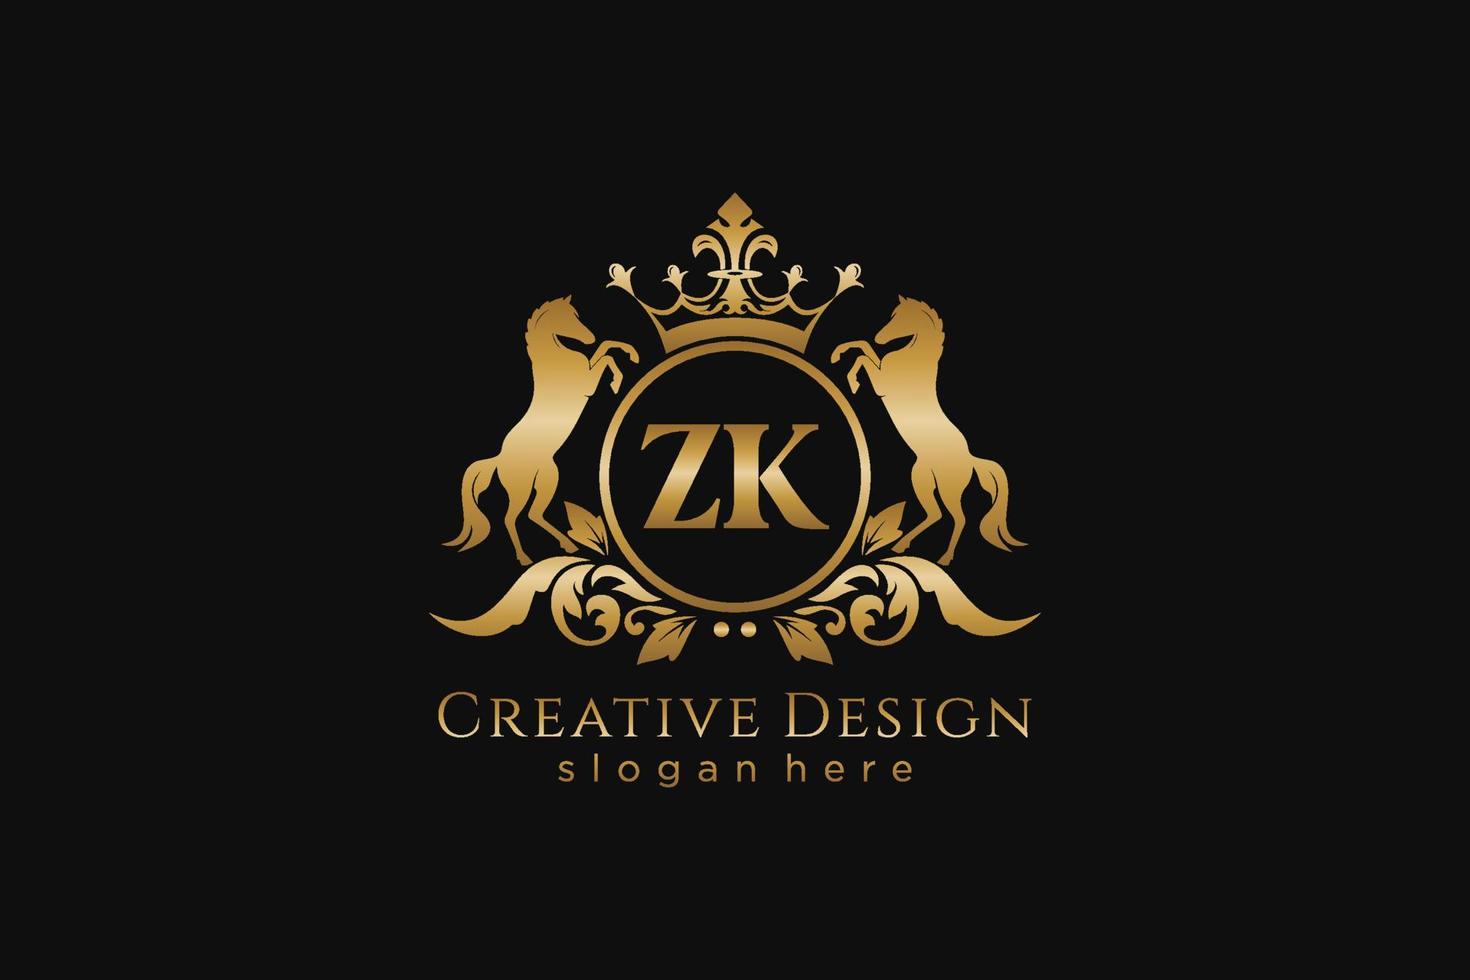 cresta dorada retro zk inicial con círculo y dos caballos, plantilla de insignia con pergaminos y corona real - perfecto para proyectos de marca de lujo vector